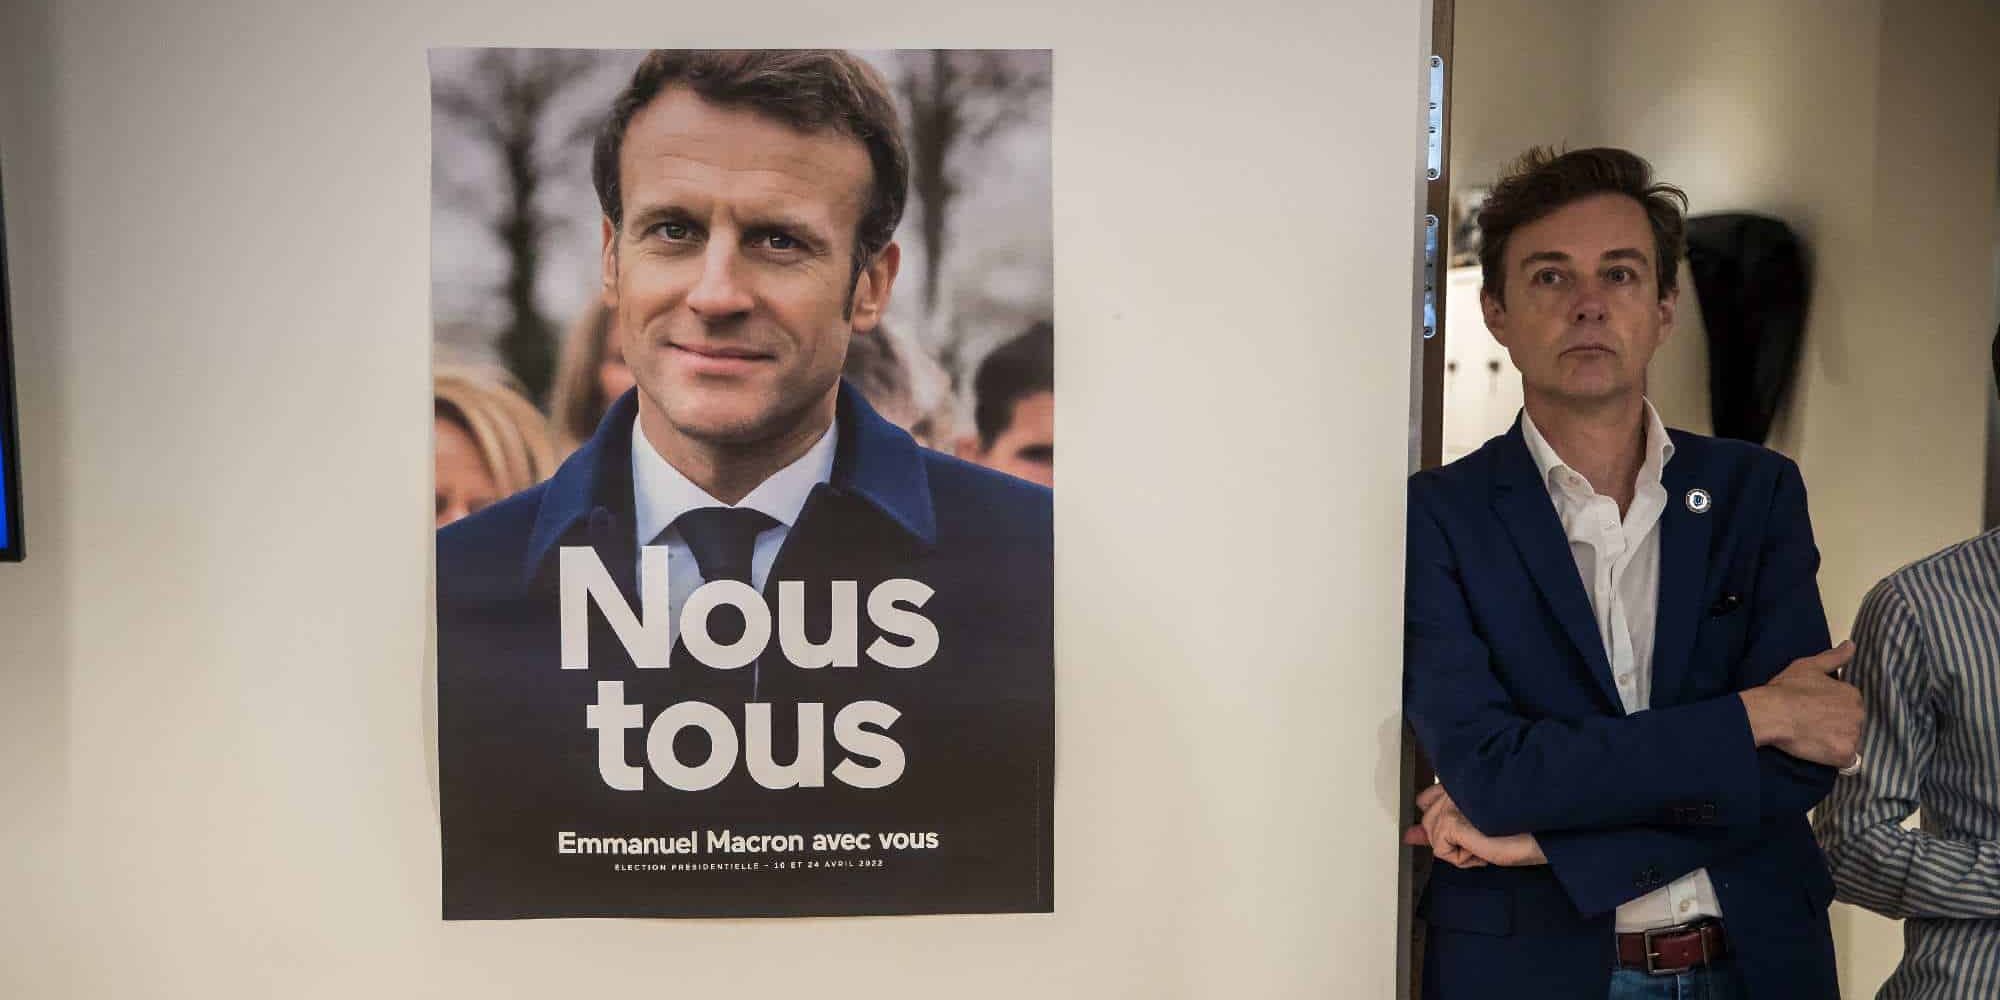 Αφίσα του Εμανουέλ Μακρόν, την ώρα που υποστηρικτές του παρακολουθούν τα αποτελέσματα των εκλογών στην Γαλλία